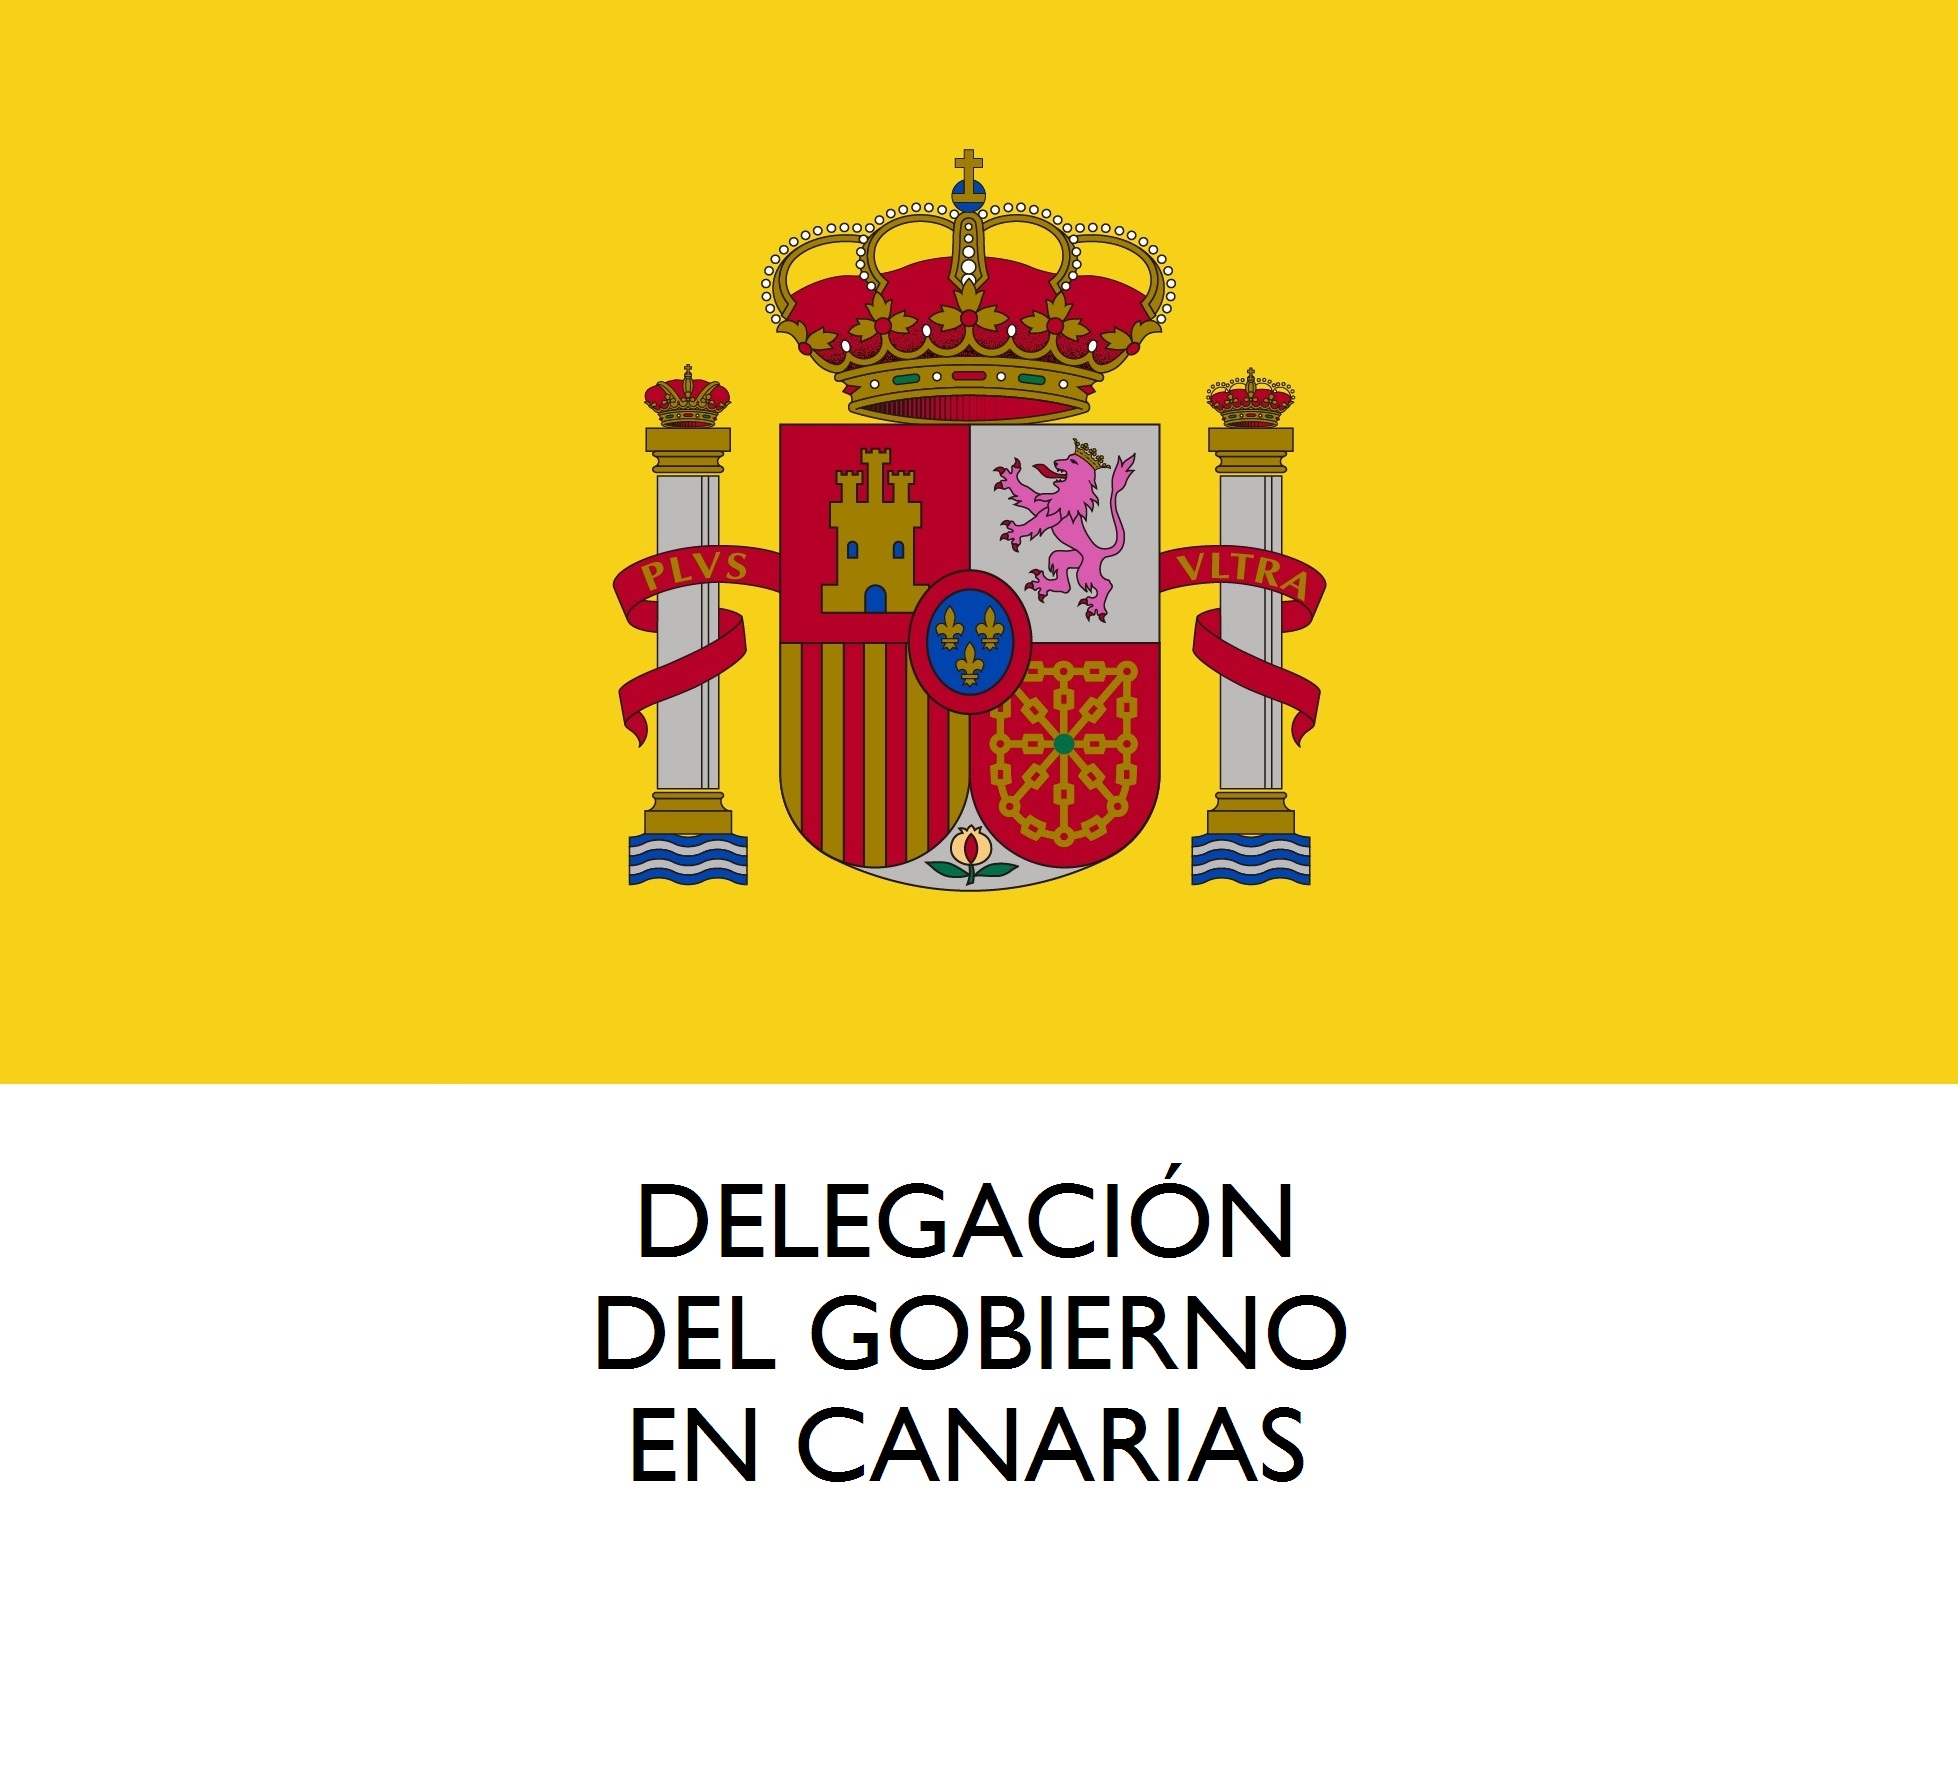 La Delegación del Gobierno reparte más de 650 mil mascarillas en nodos de transporte, municipios y entidades sociales en Canarias